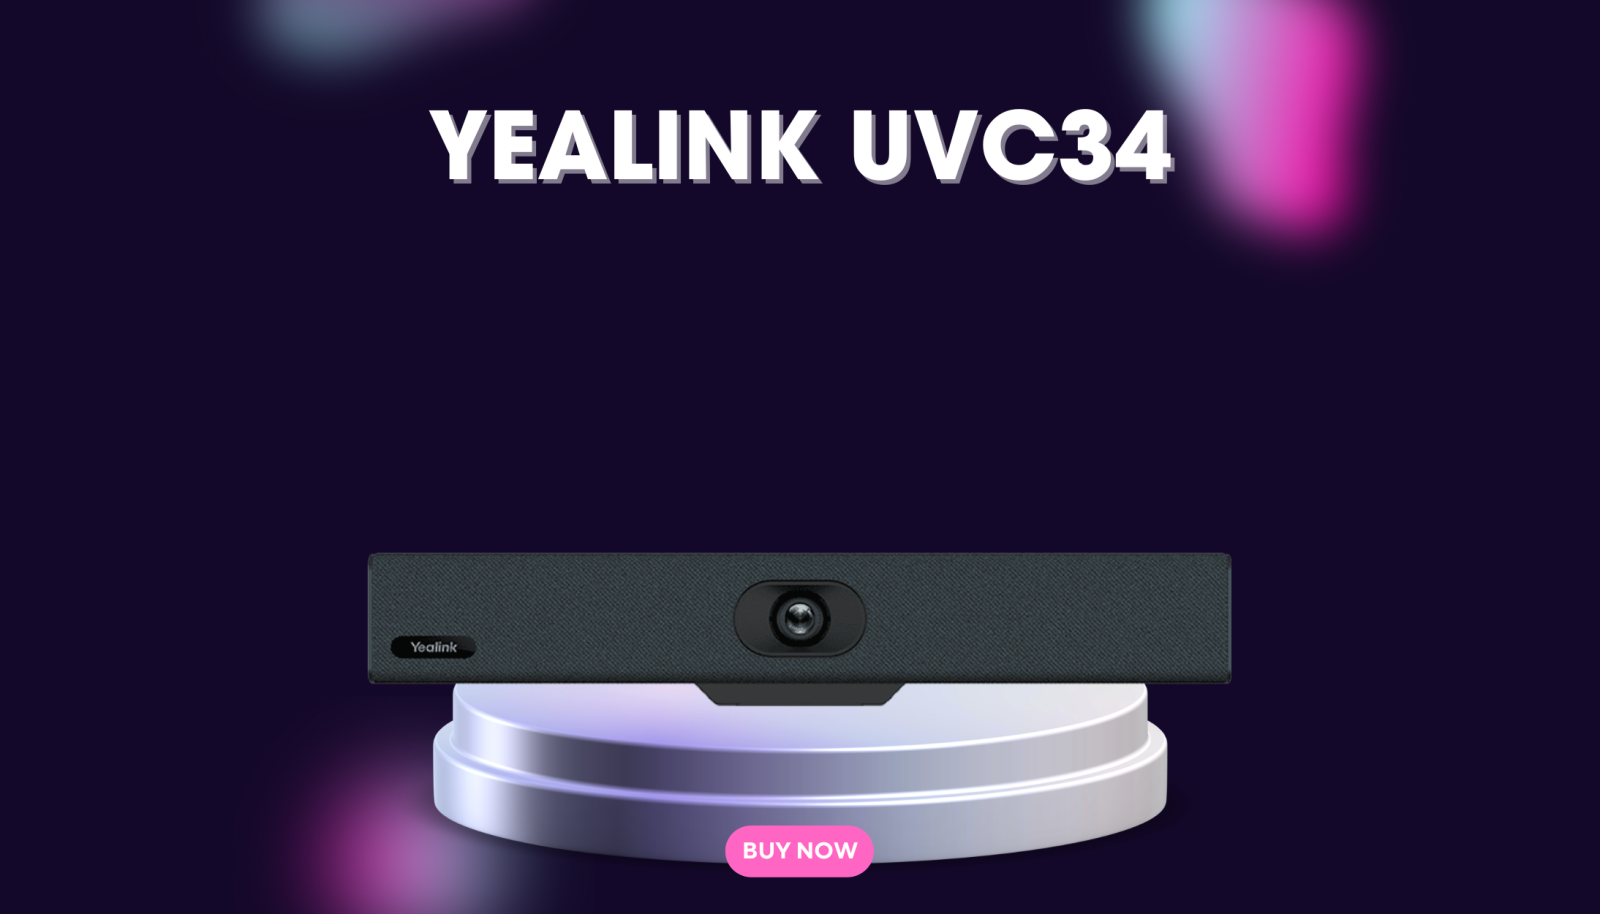 Thiết bị hội nghị Yealink UVC34.